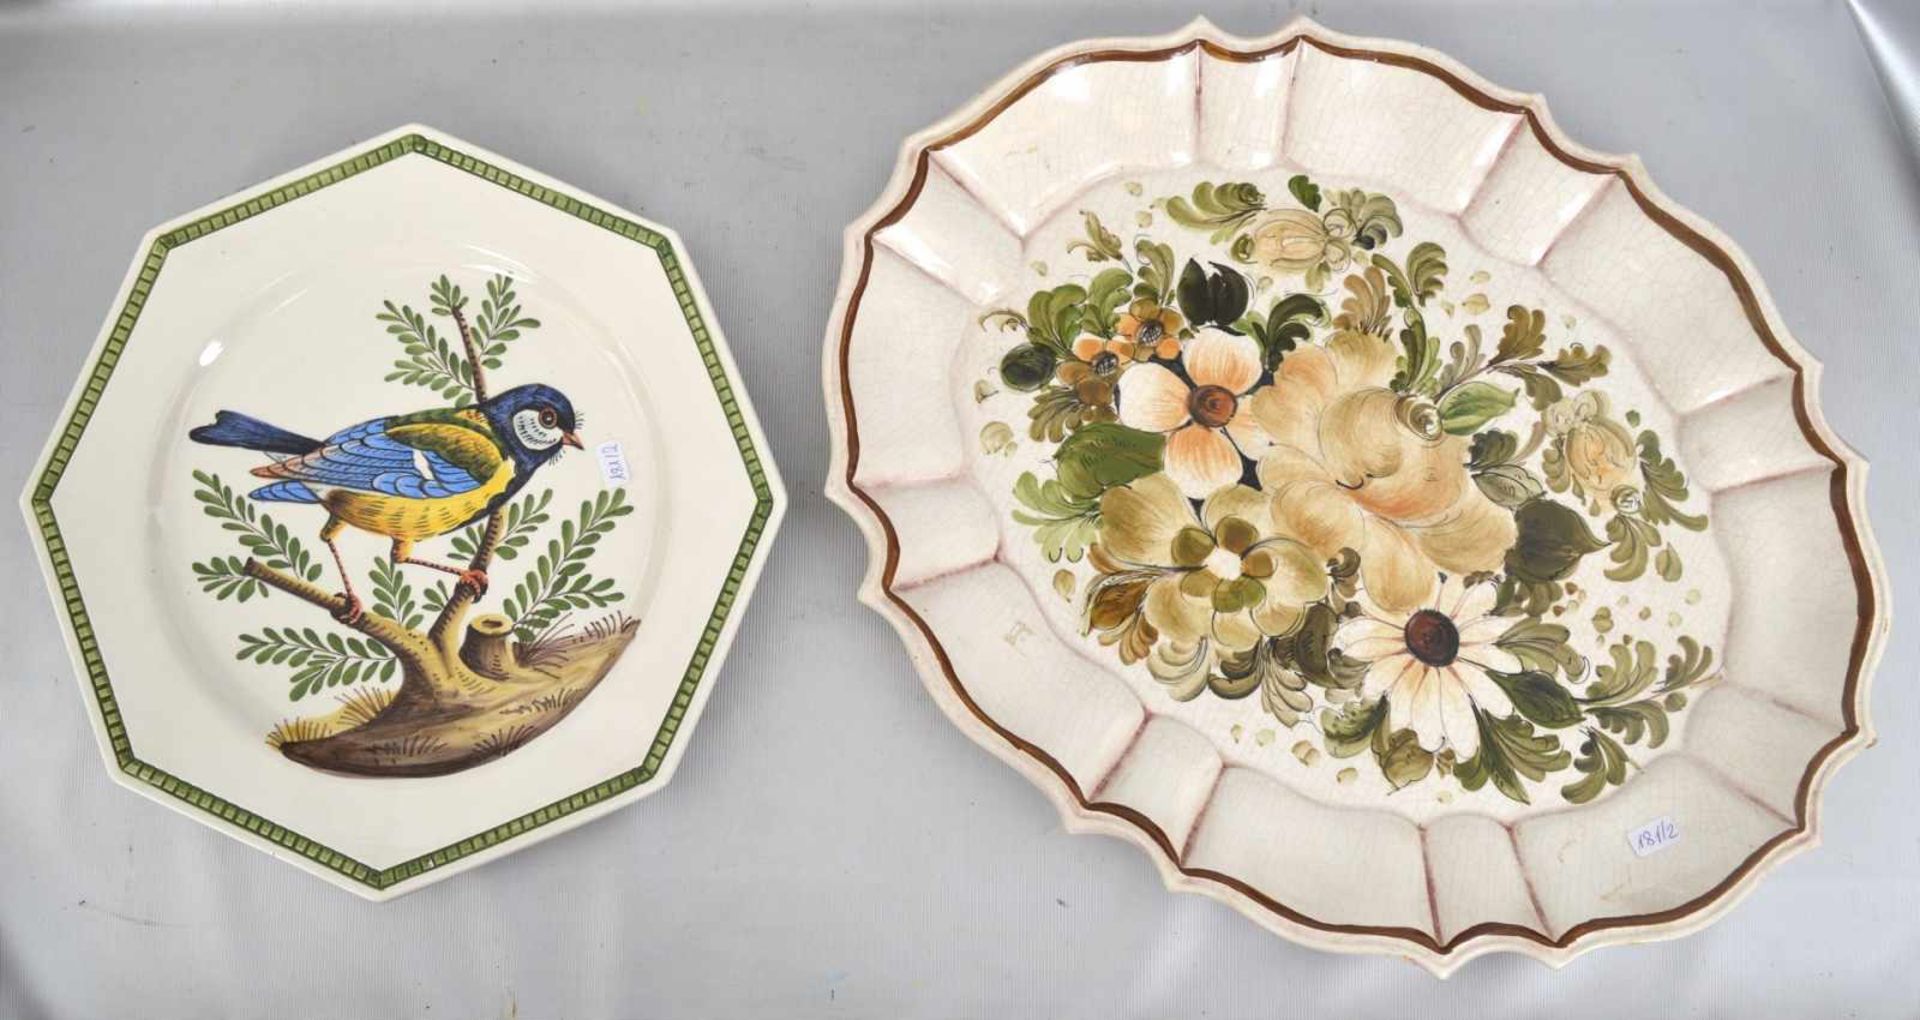 Platte und Teller Keramik, bunt bemalt, Spiegel mit Vogel- und Blumenmotiven